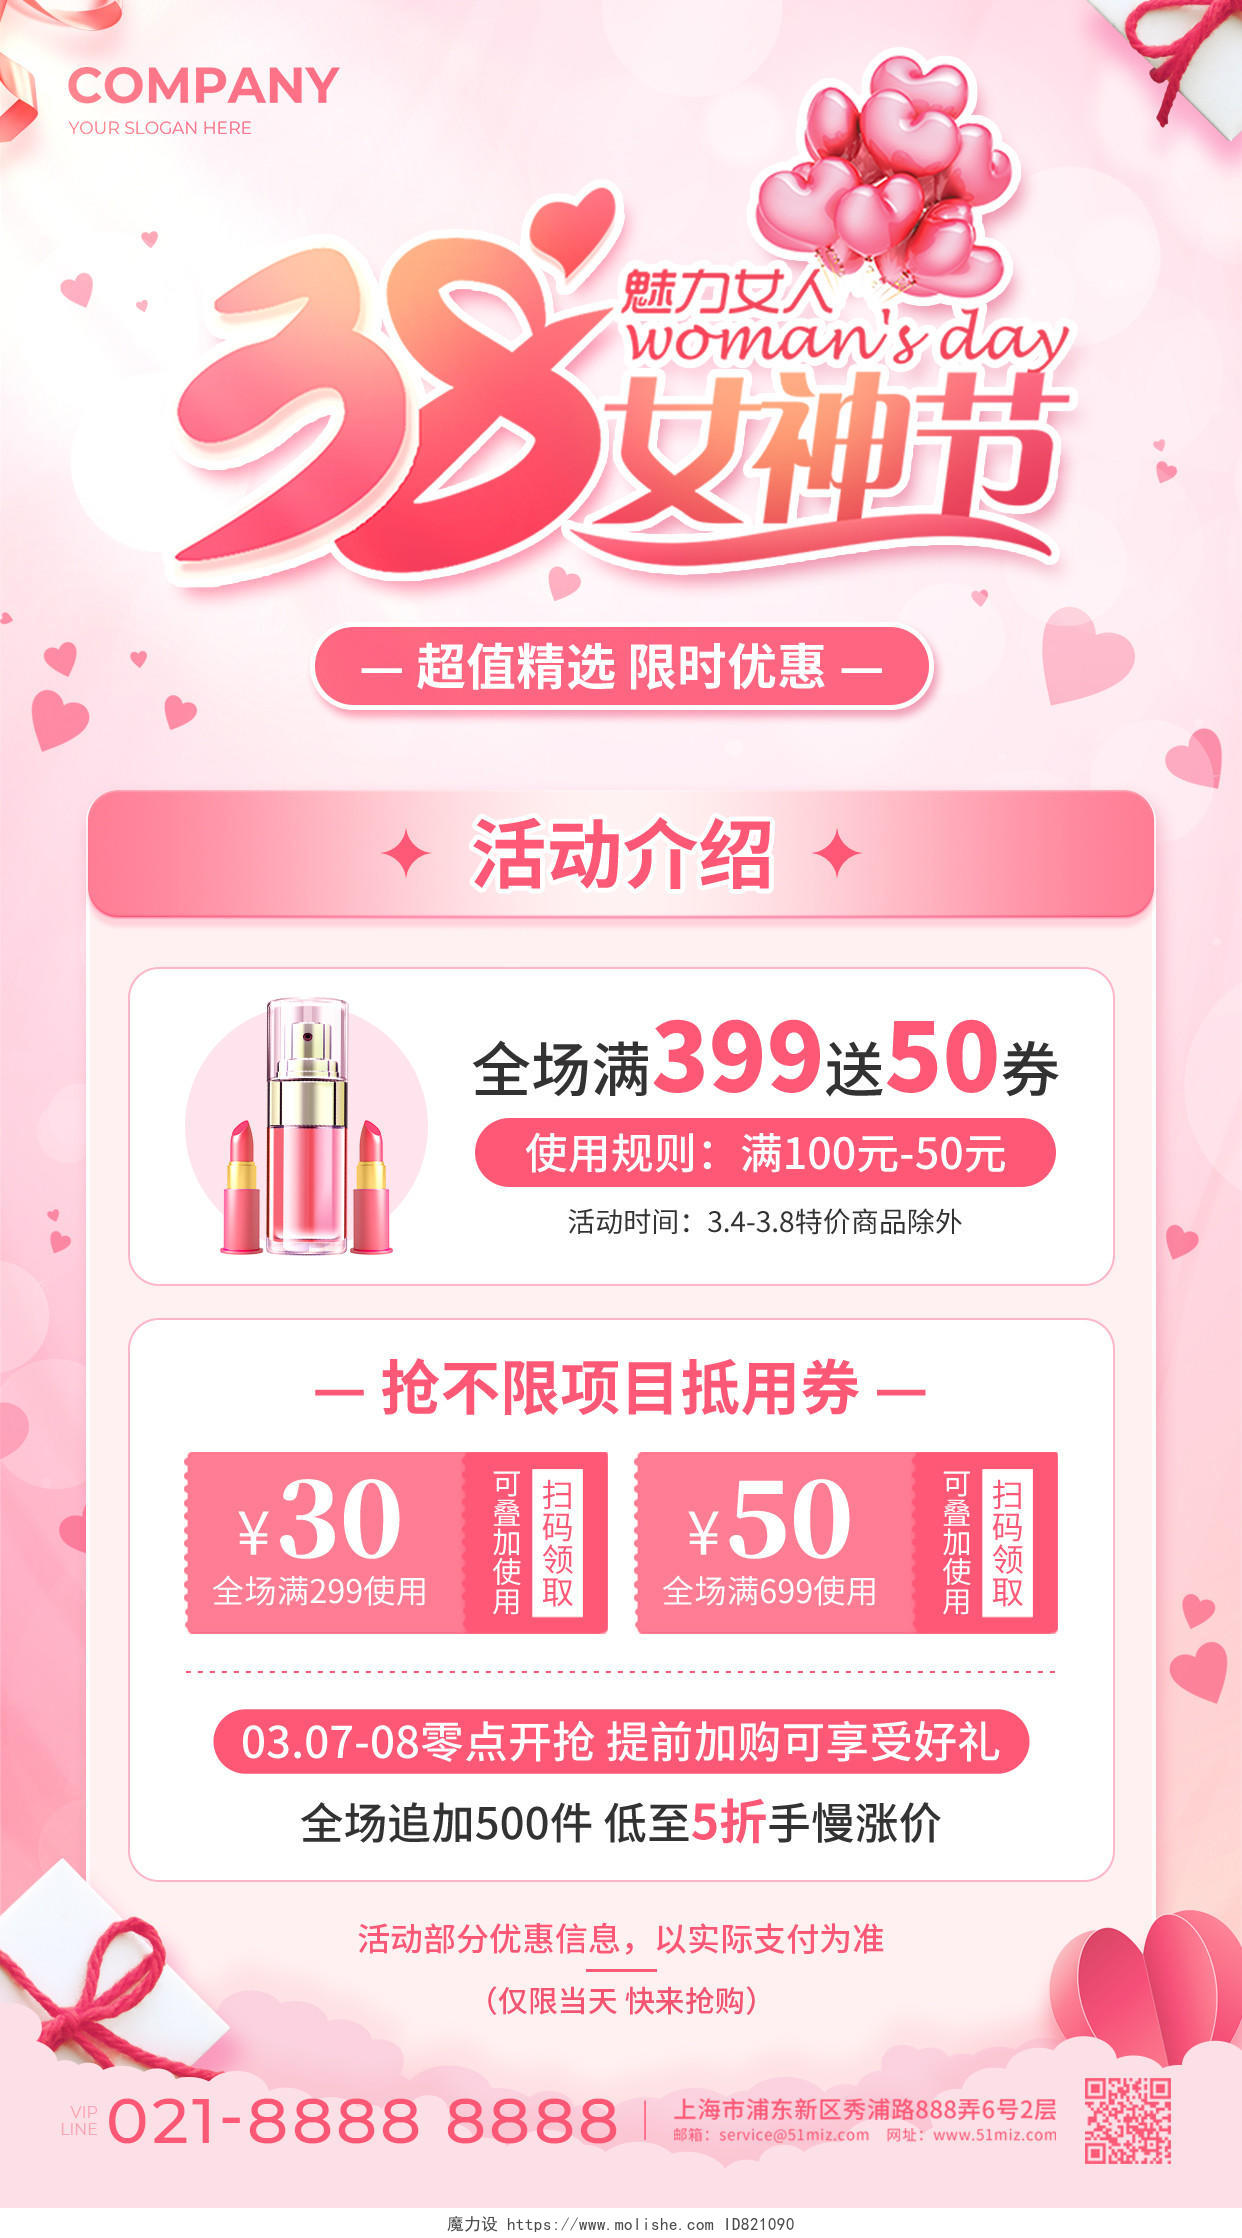 粉色渐变风38女神节妇女节化妆品促销活动手机文案海报